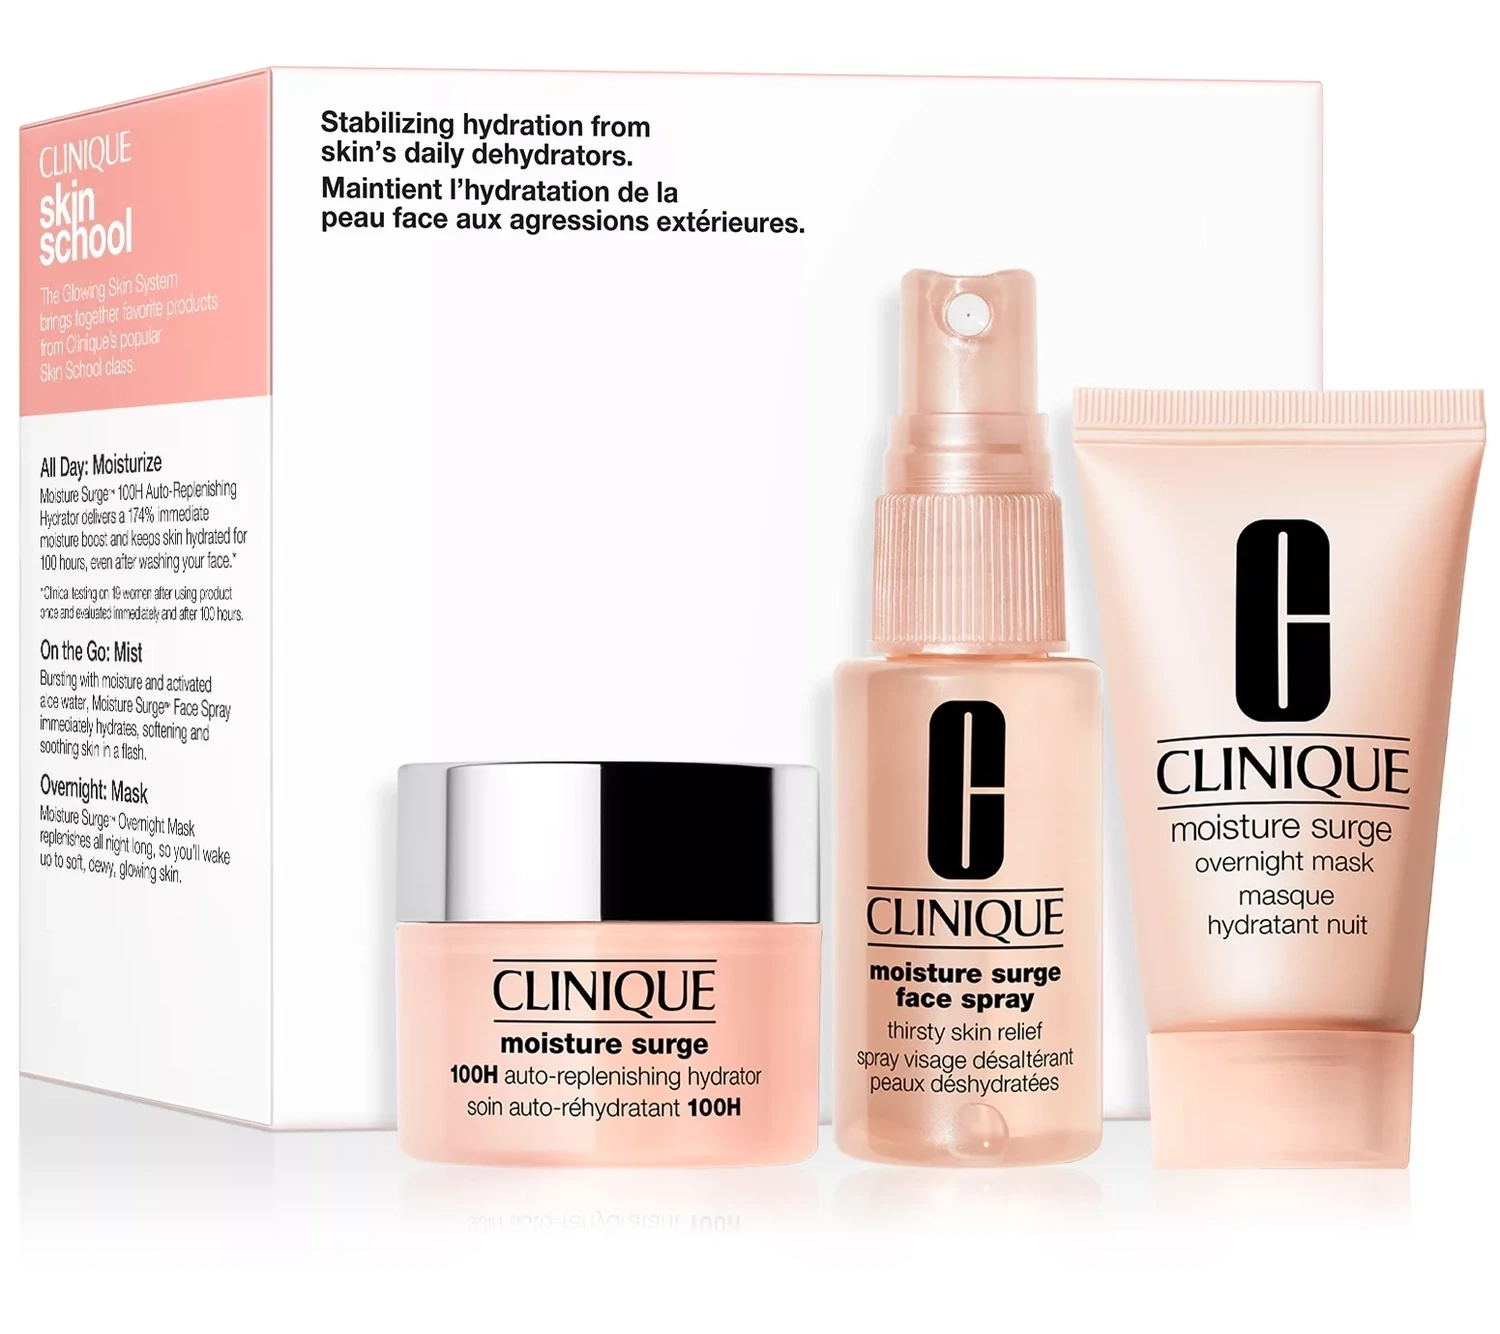 CLINIQUE - Skin School Supplies: Glowing Skin Essentials 